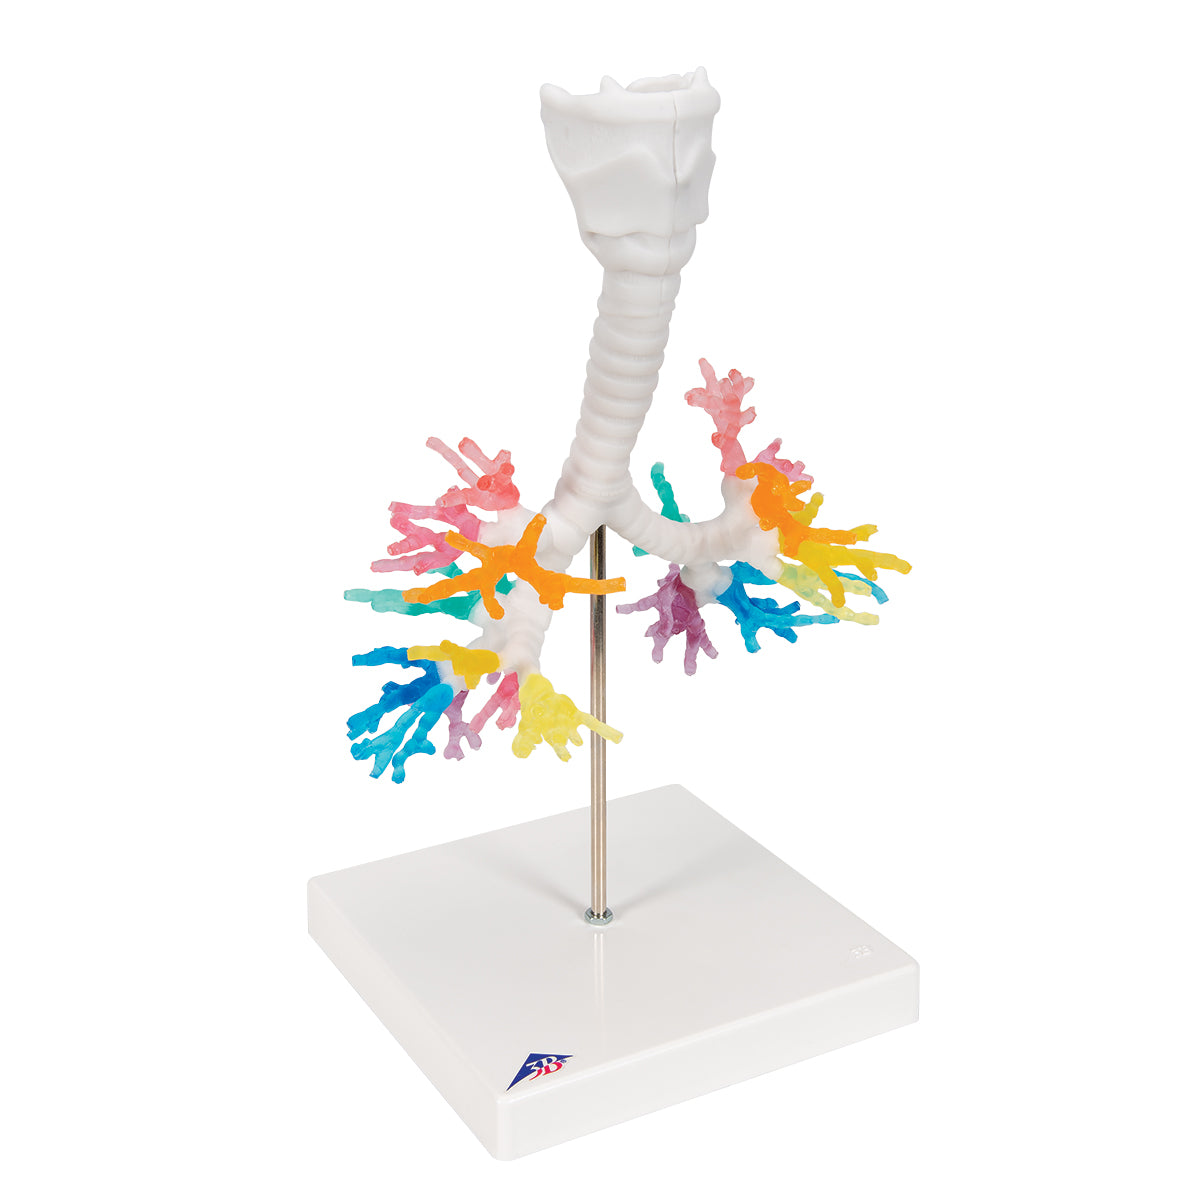 CT bronkier med strube, 3D model via tomografisk data